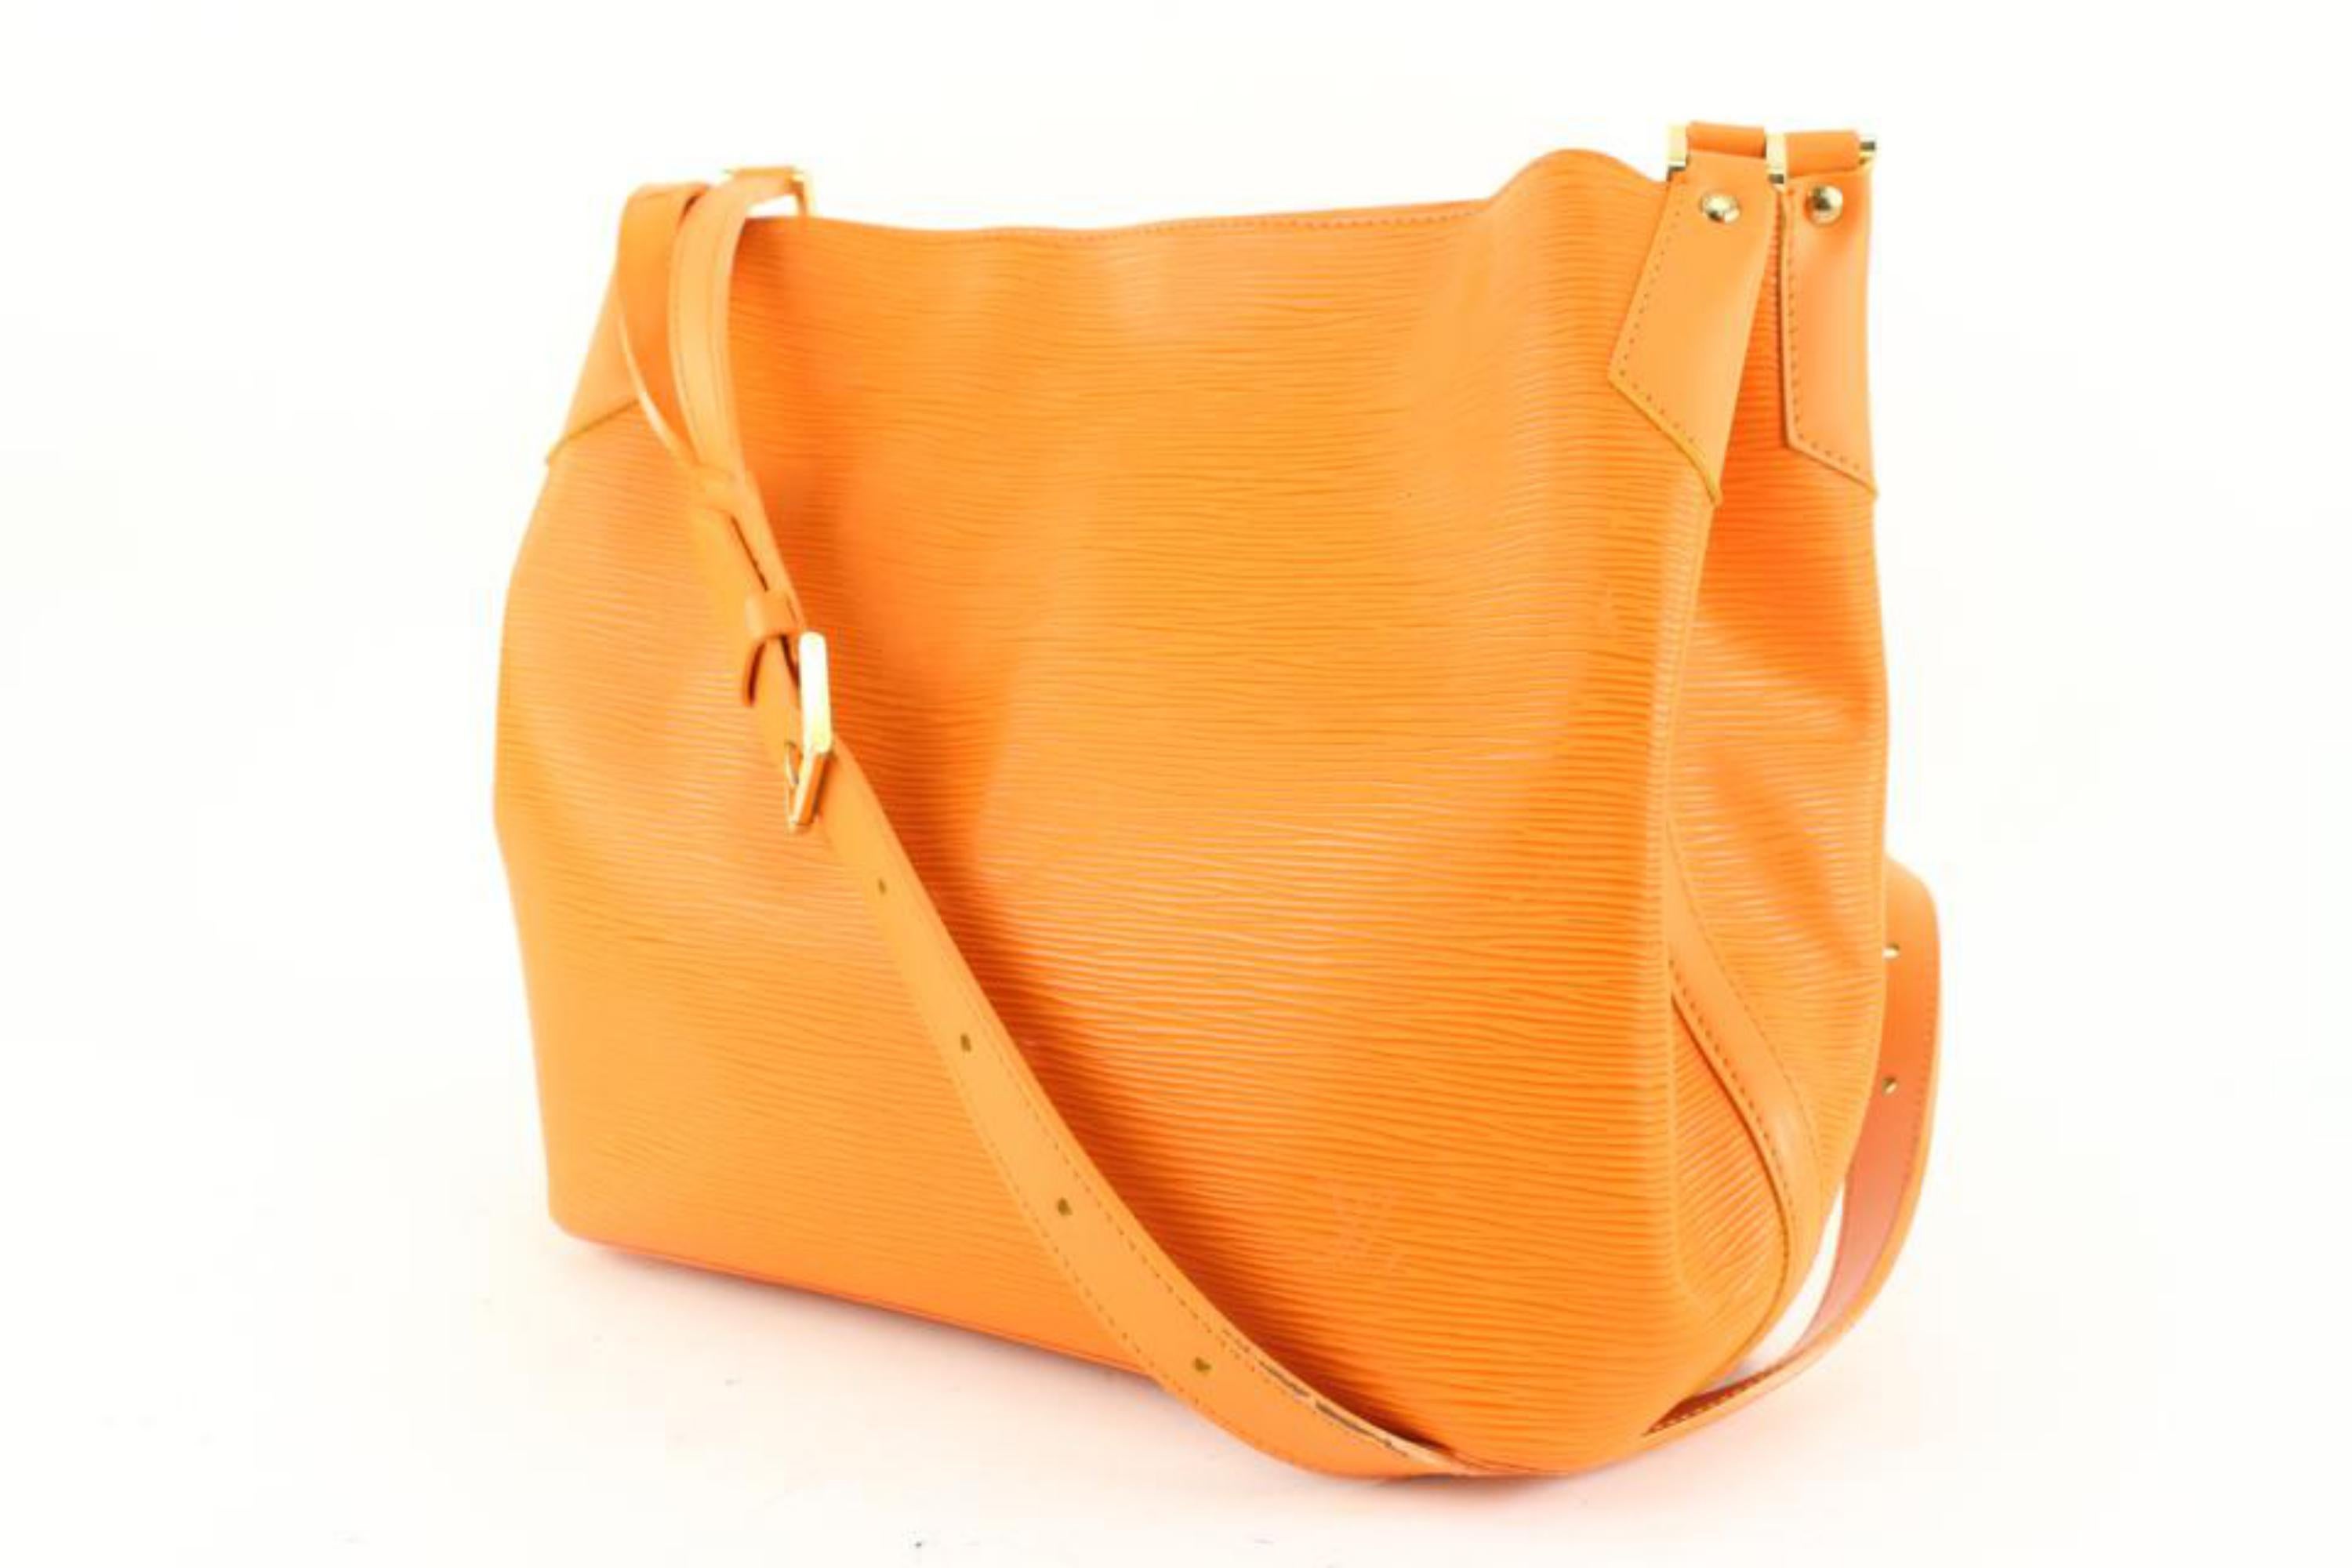 Louis Vuitton Mandarin Orange Epi Leather Mandara MM Hobo Shoulder bag 16lv38
Date Code/Serial Number: FL0055
Made In: France
Measurements: Length:  13